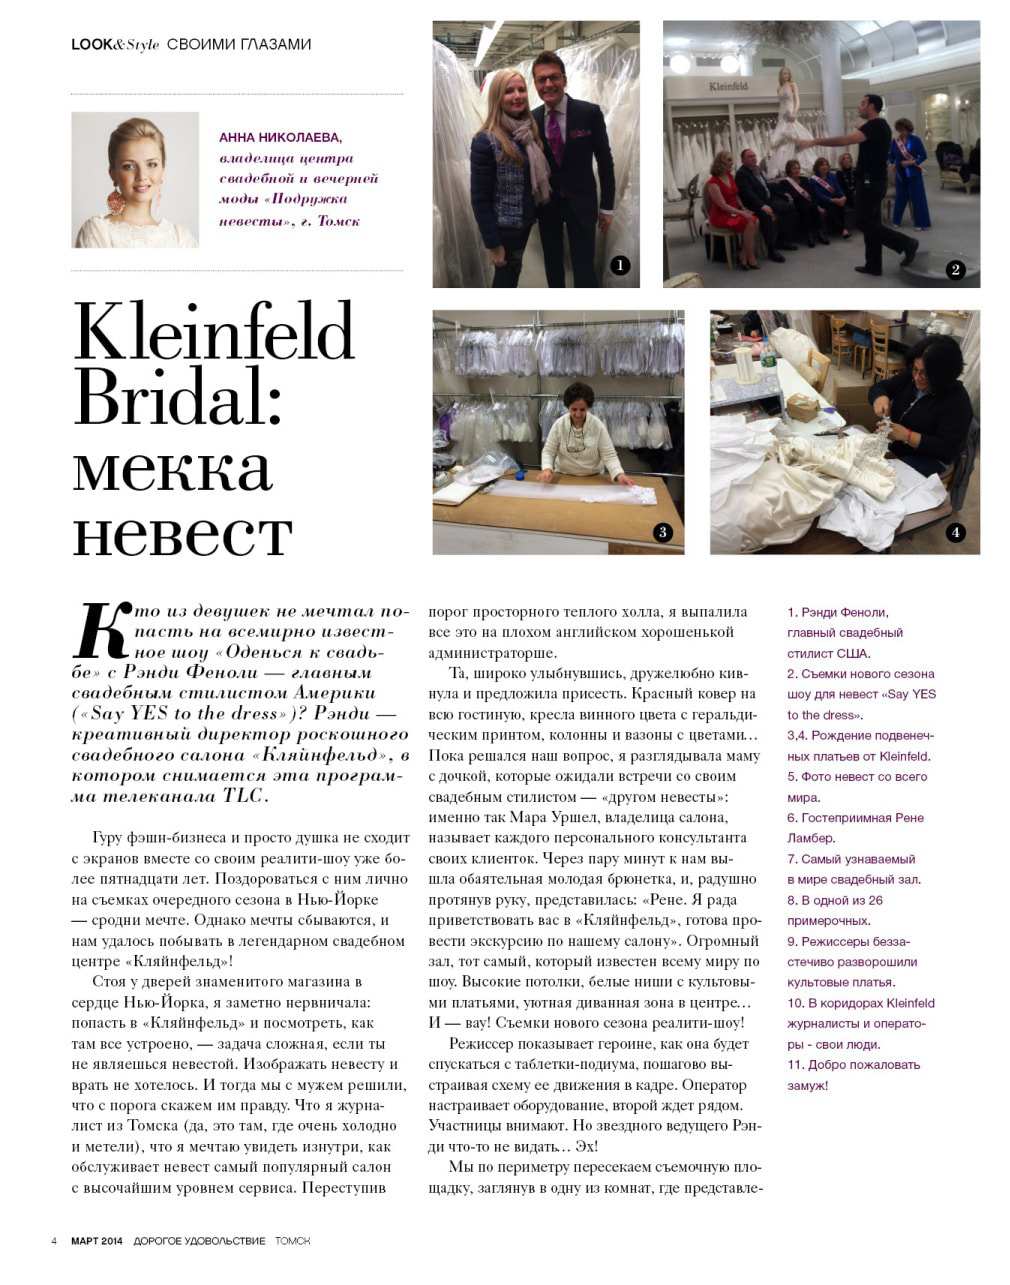 Страница журнала дорогое удовольствие Kleinfeld Bridal: мекка невест